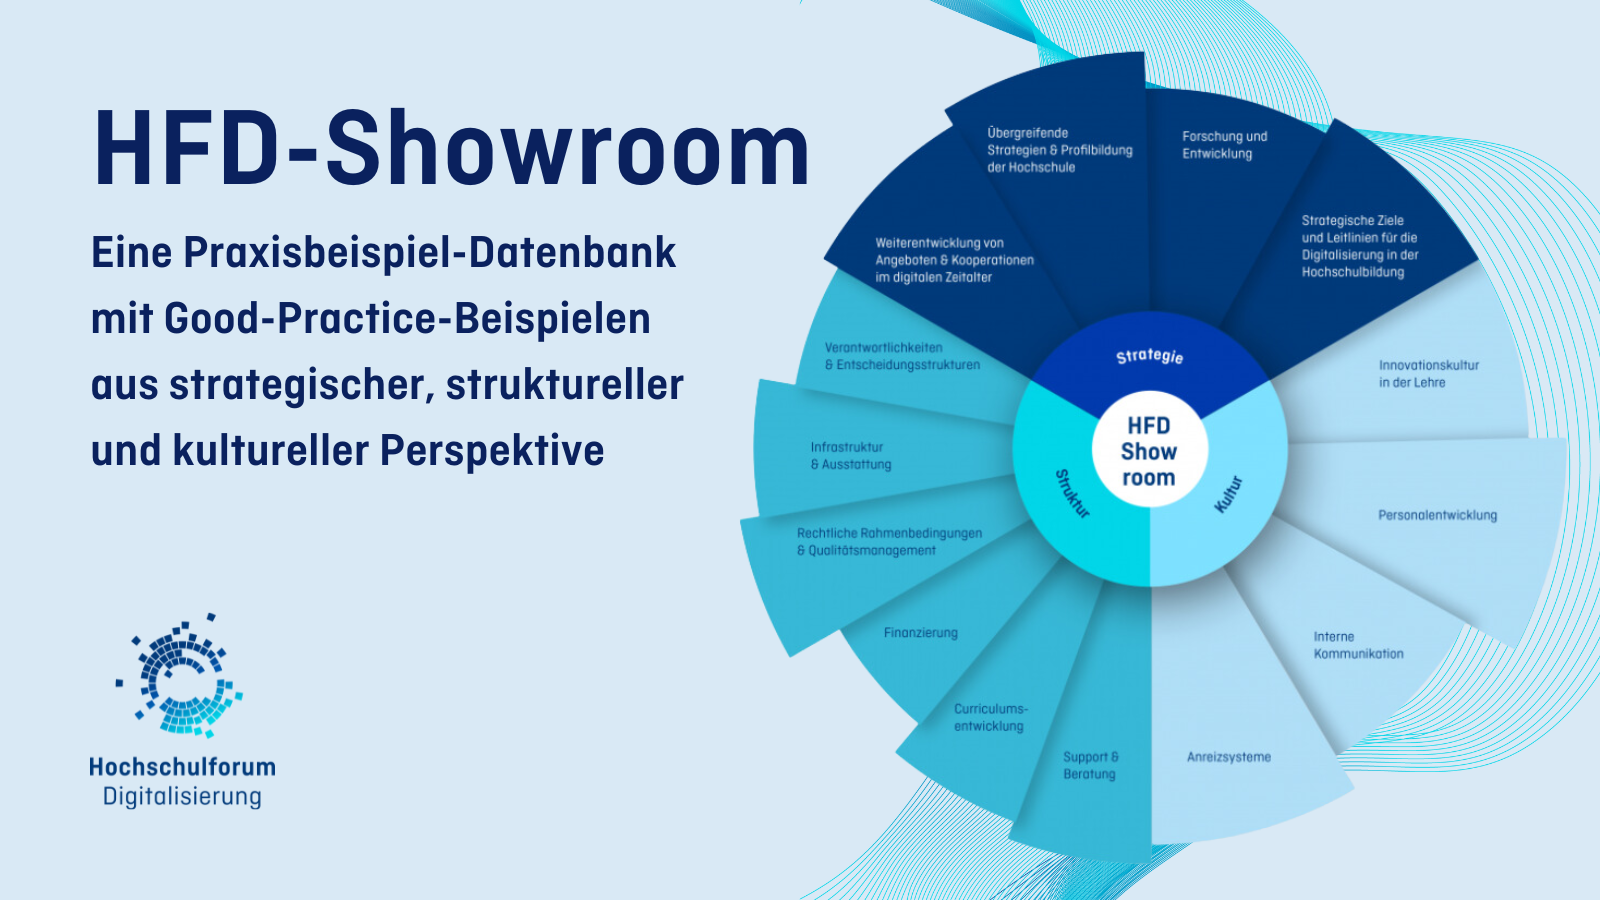 Titelbild zur Website: HFD-Showroom – eine Praxisbeispiel-Datenbank mit Good-Practice-Beispielen aus strategischer, struktureller und kultureller Perspektive.